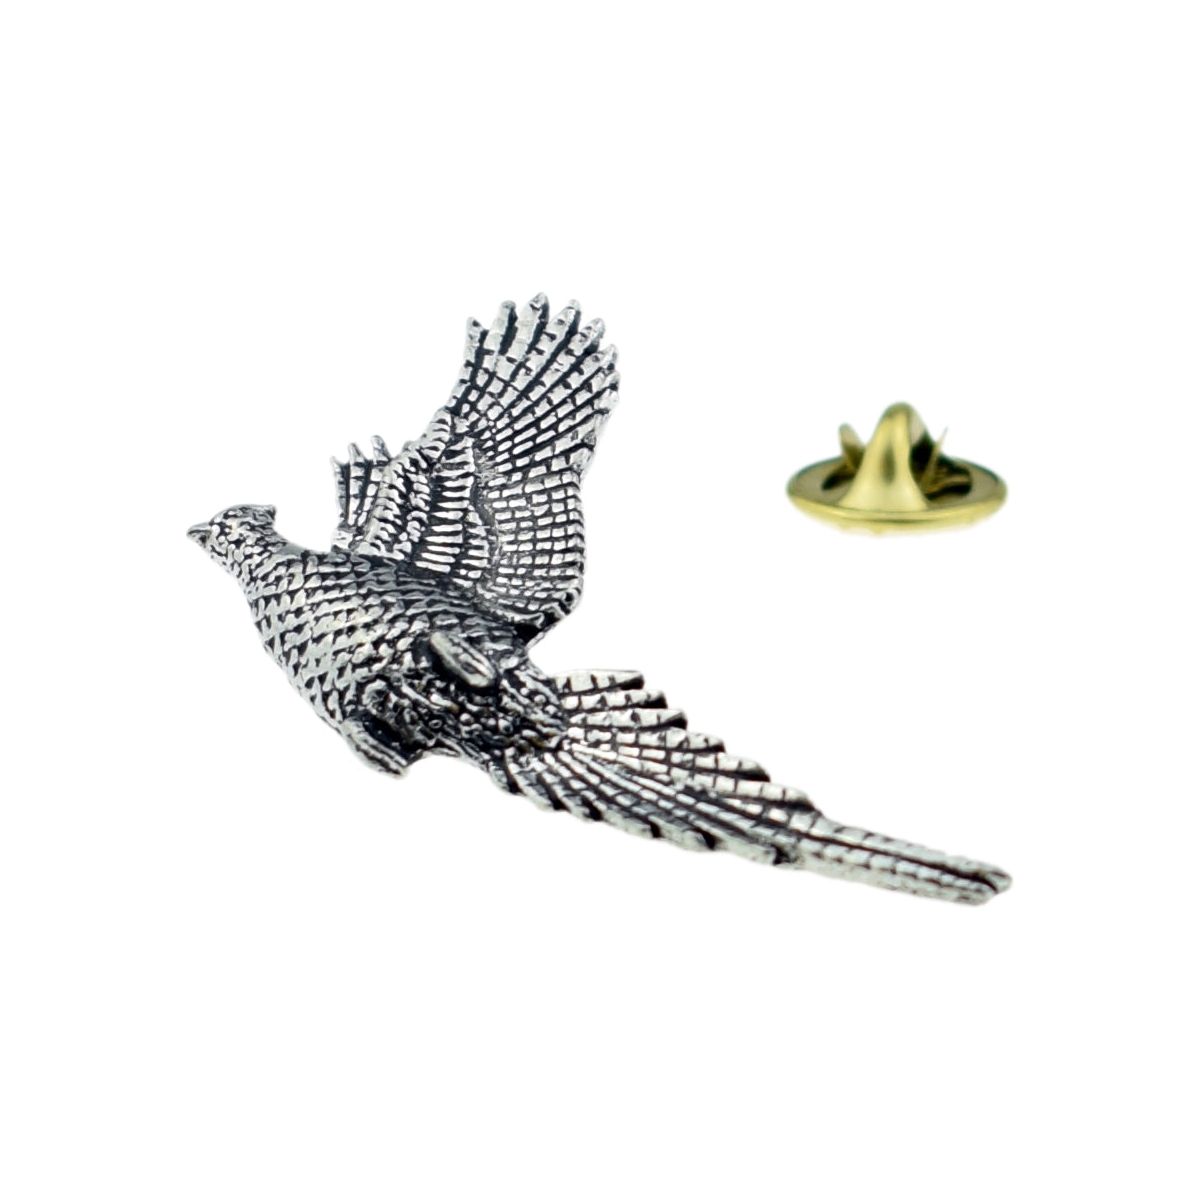 Rising Pheasant Bird English Pewter Lapel Pin Badge - Ashton and Finch